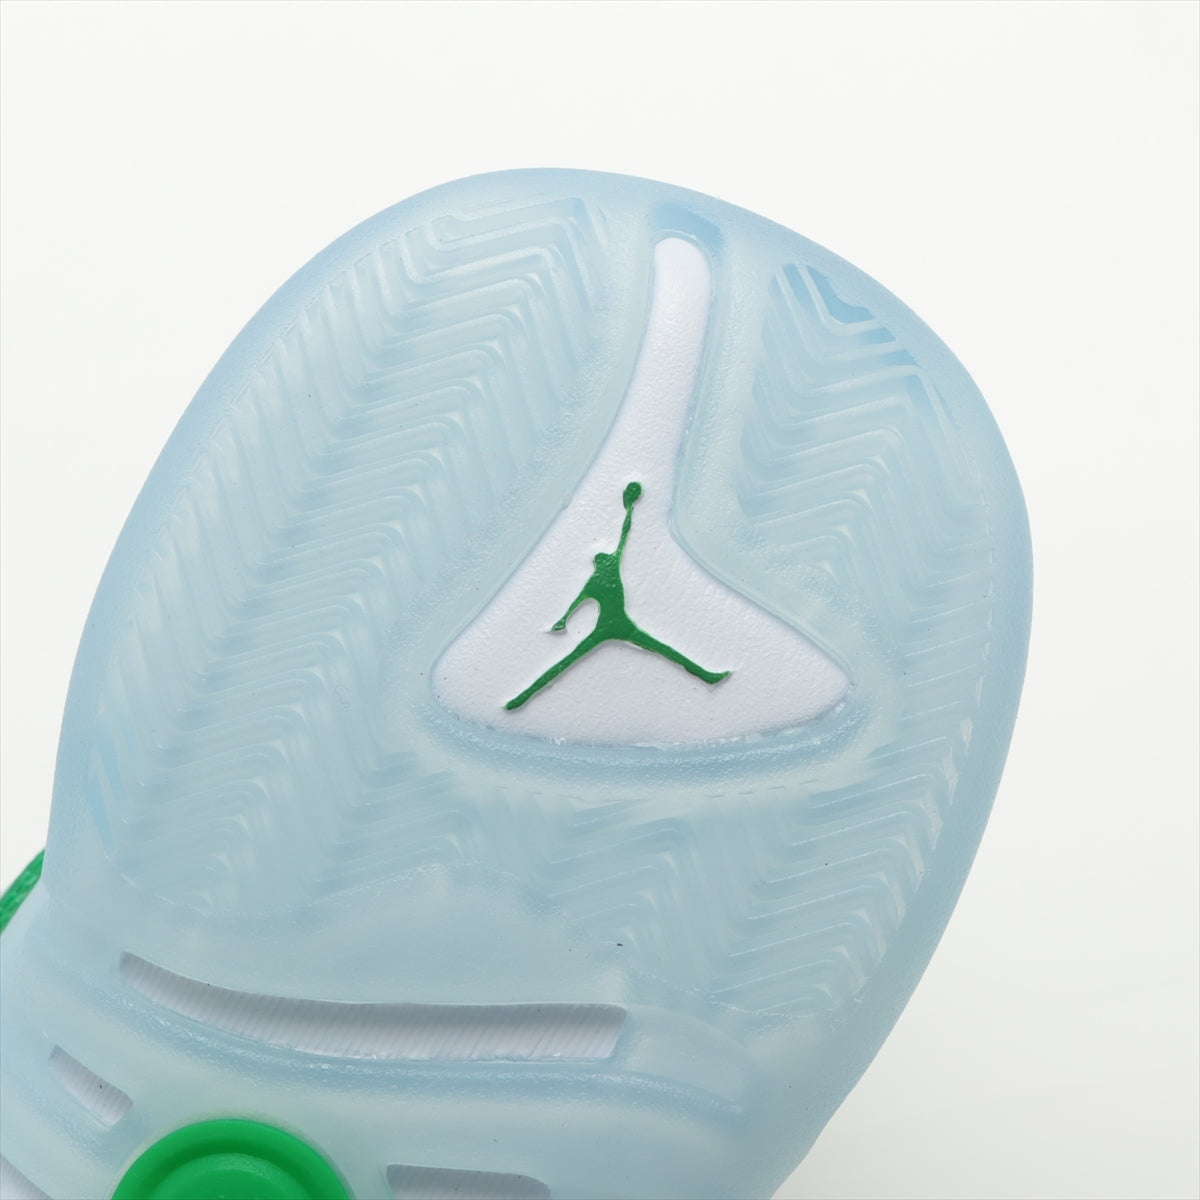 ナイキ レザー×ファブリック ハイカットスニーカー 29.0㎝ メンズ ホワイト×グリーン DO1925-130 Jordan Jumpman Two Trey Basketball Shoes